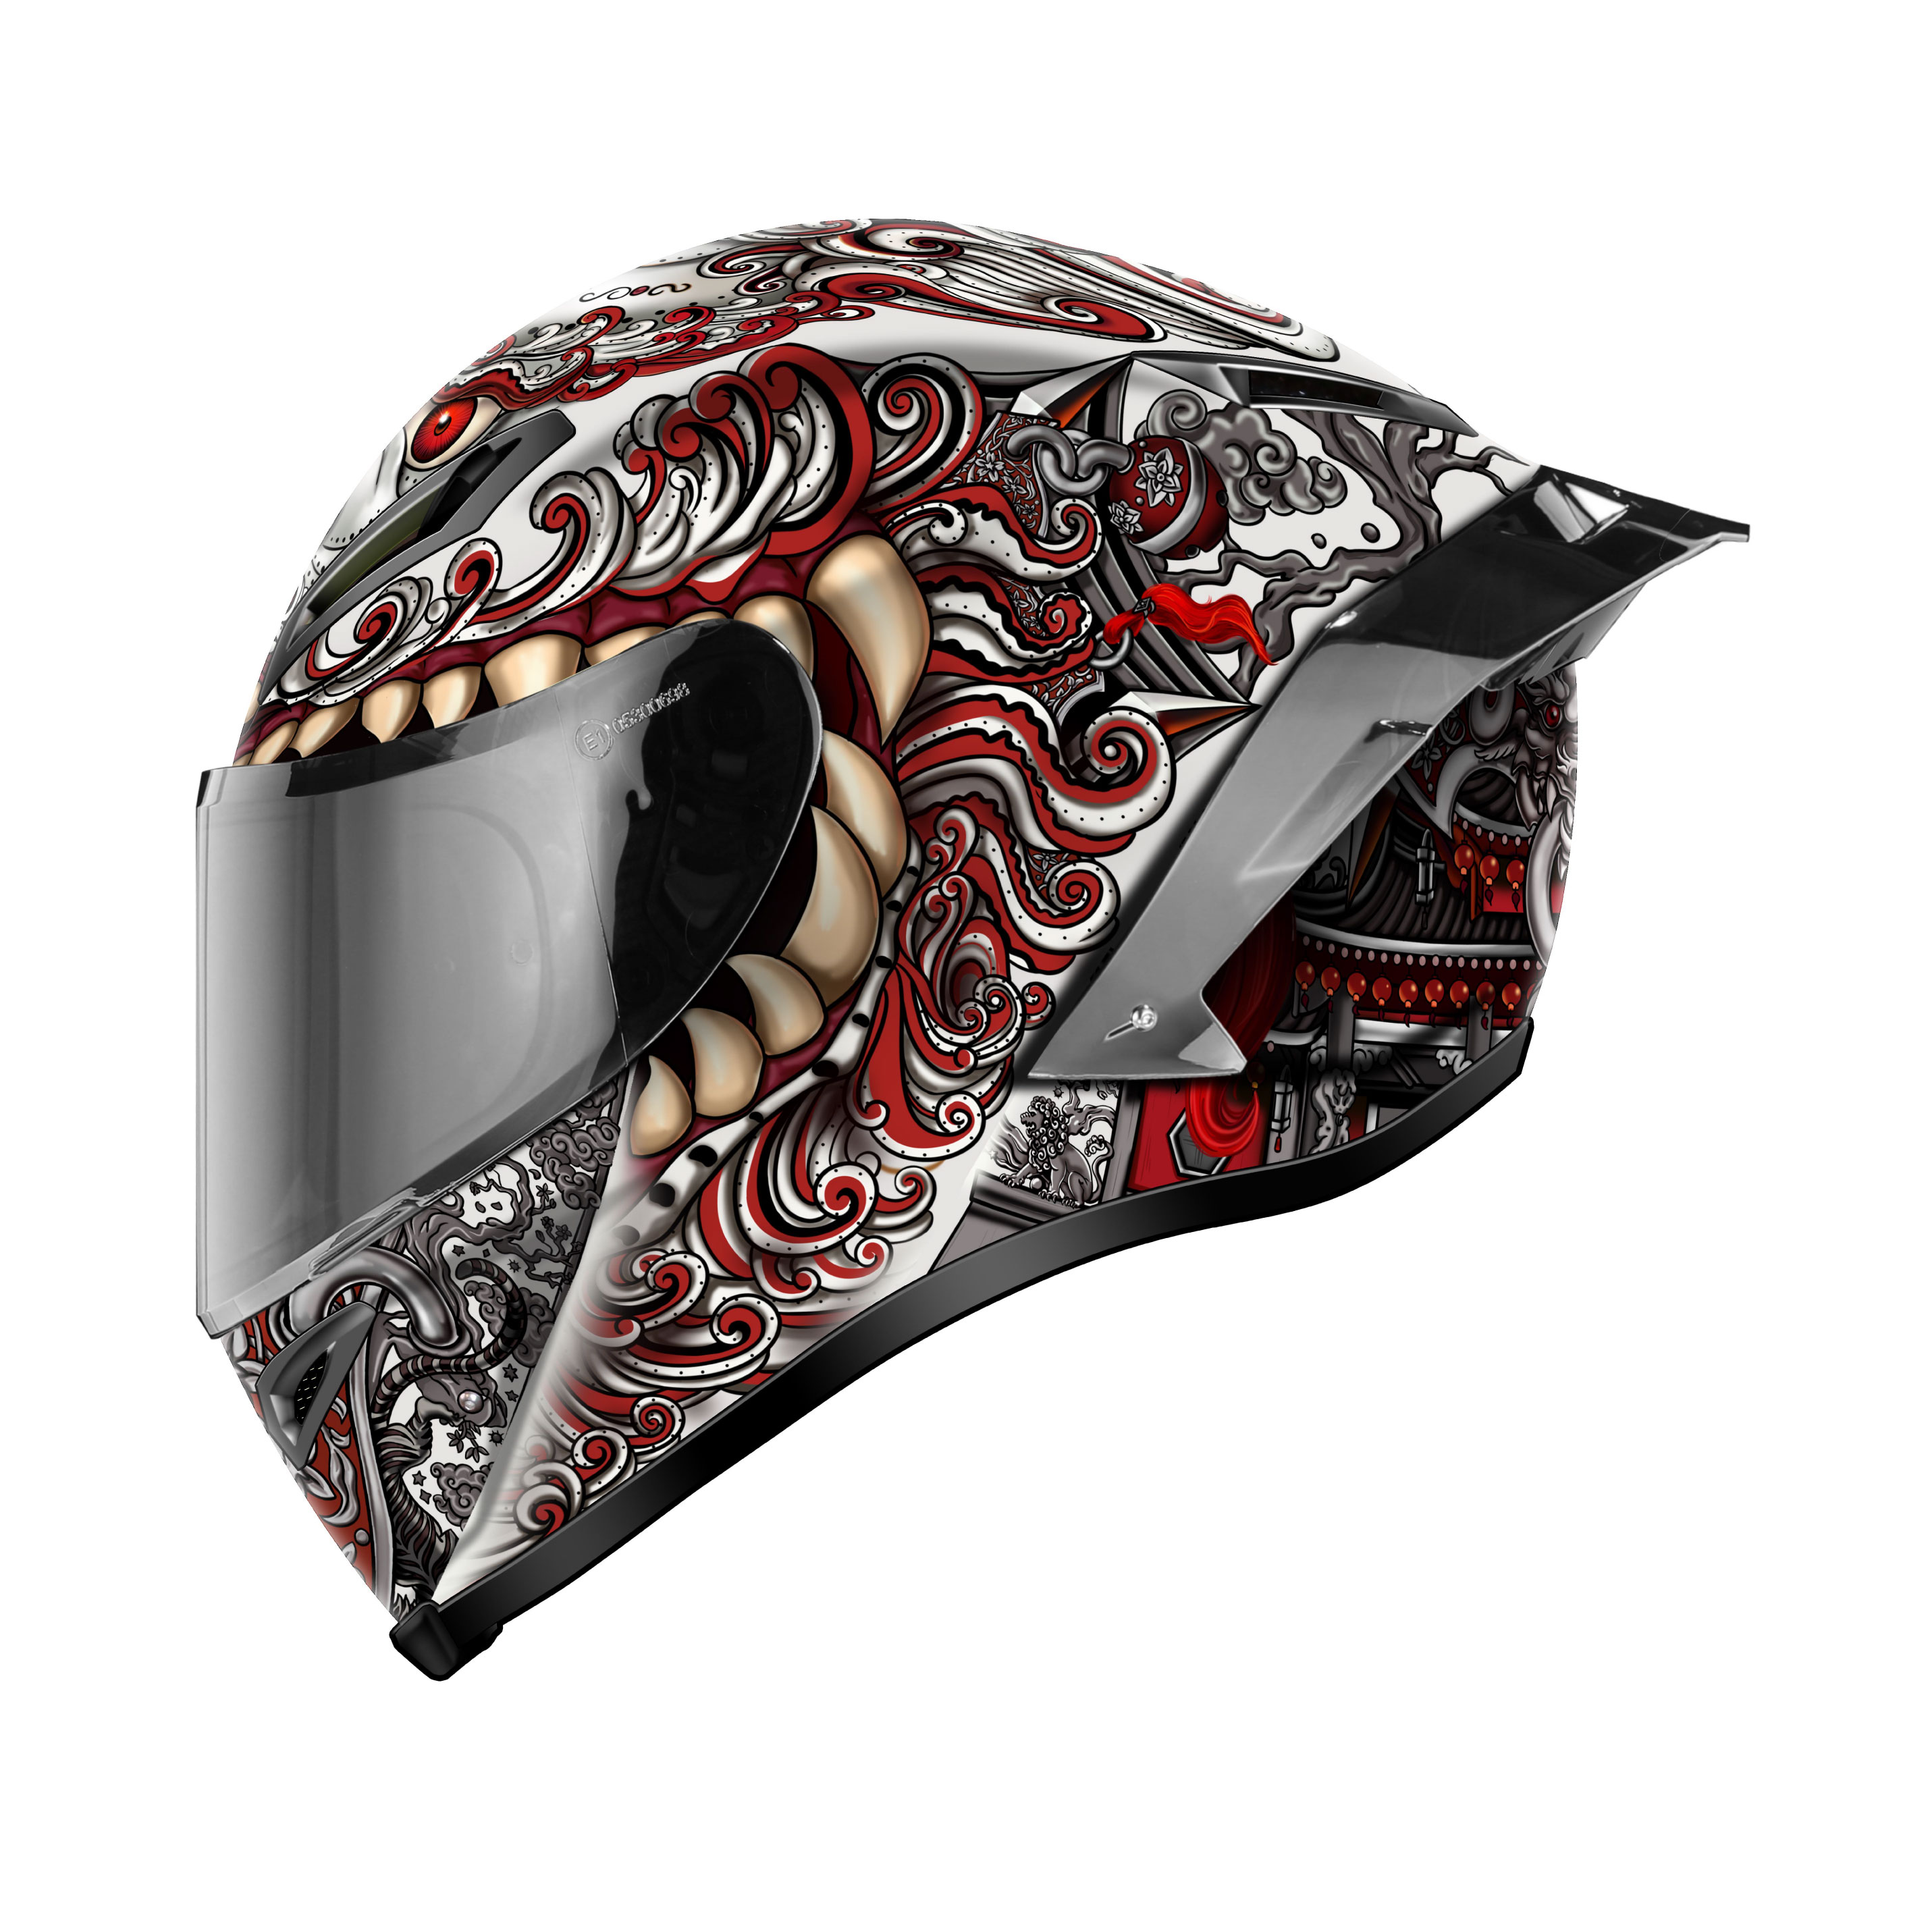 硬汉头盔摩托车越野拉力摩旅碳纤维玻璃钢全盔机车装备街盔跑盔